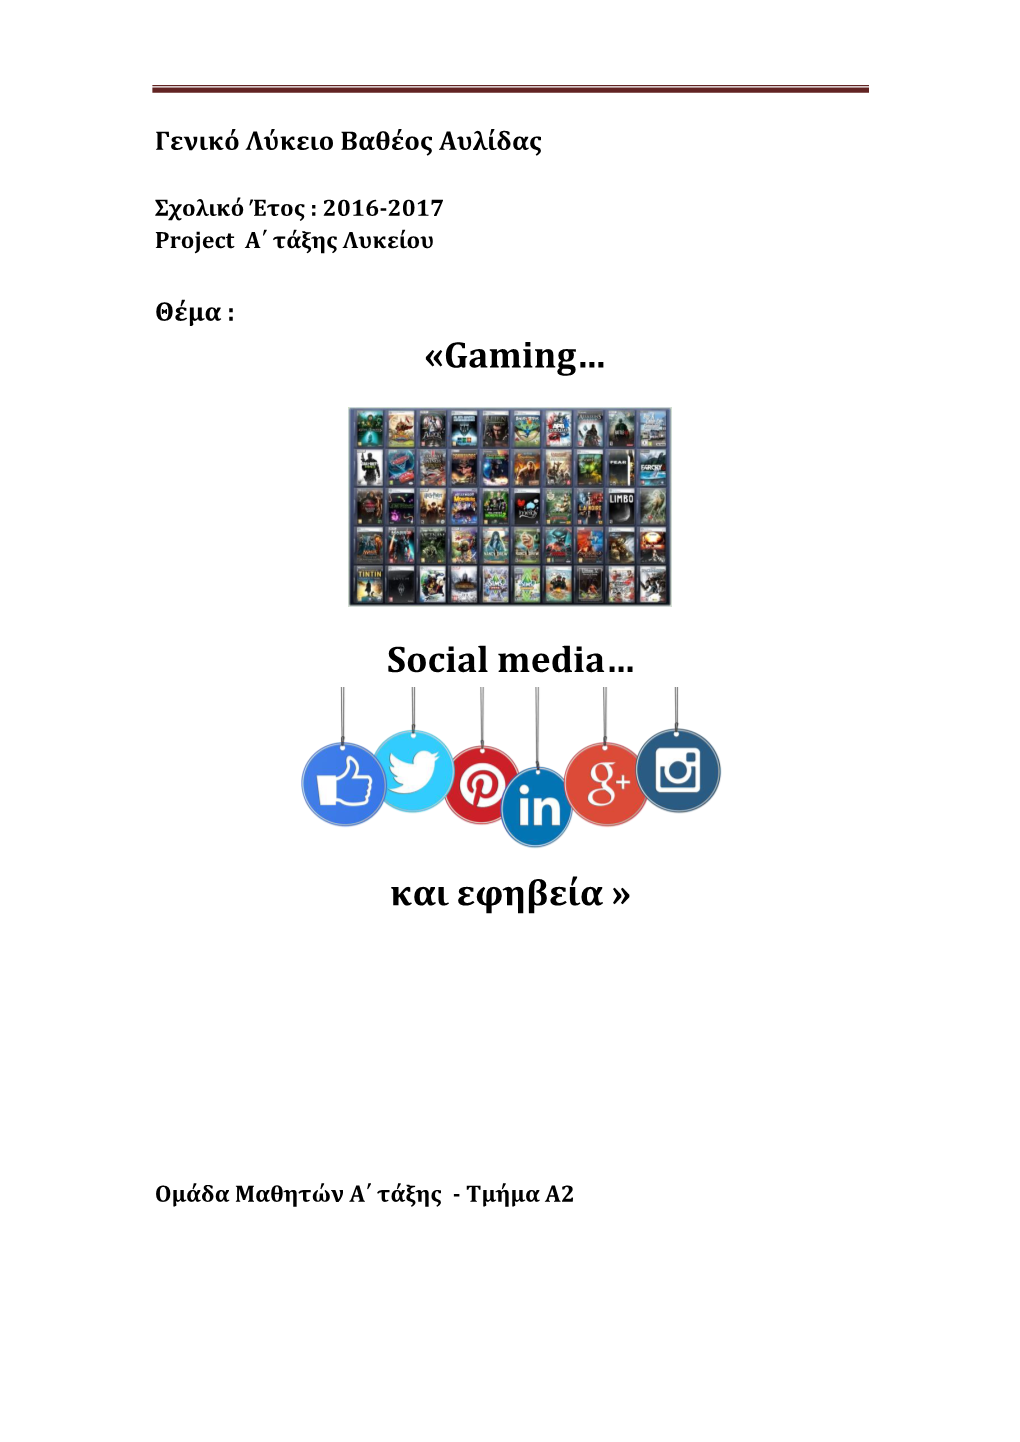 «Gaming… Social Media… Και Εφηβεία »